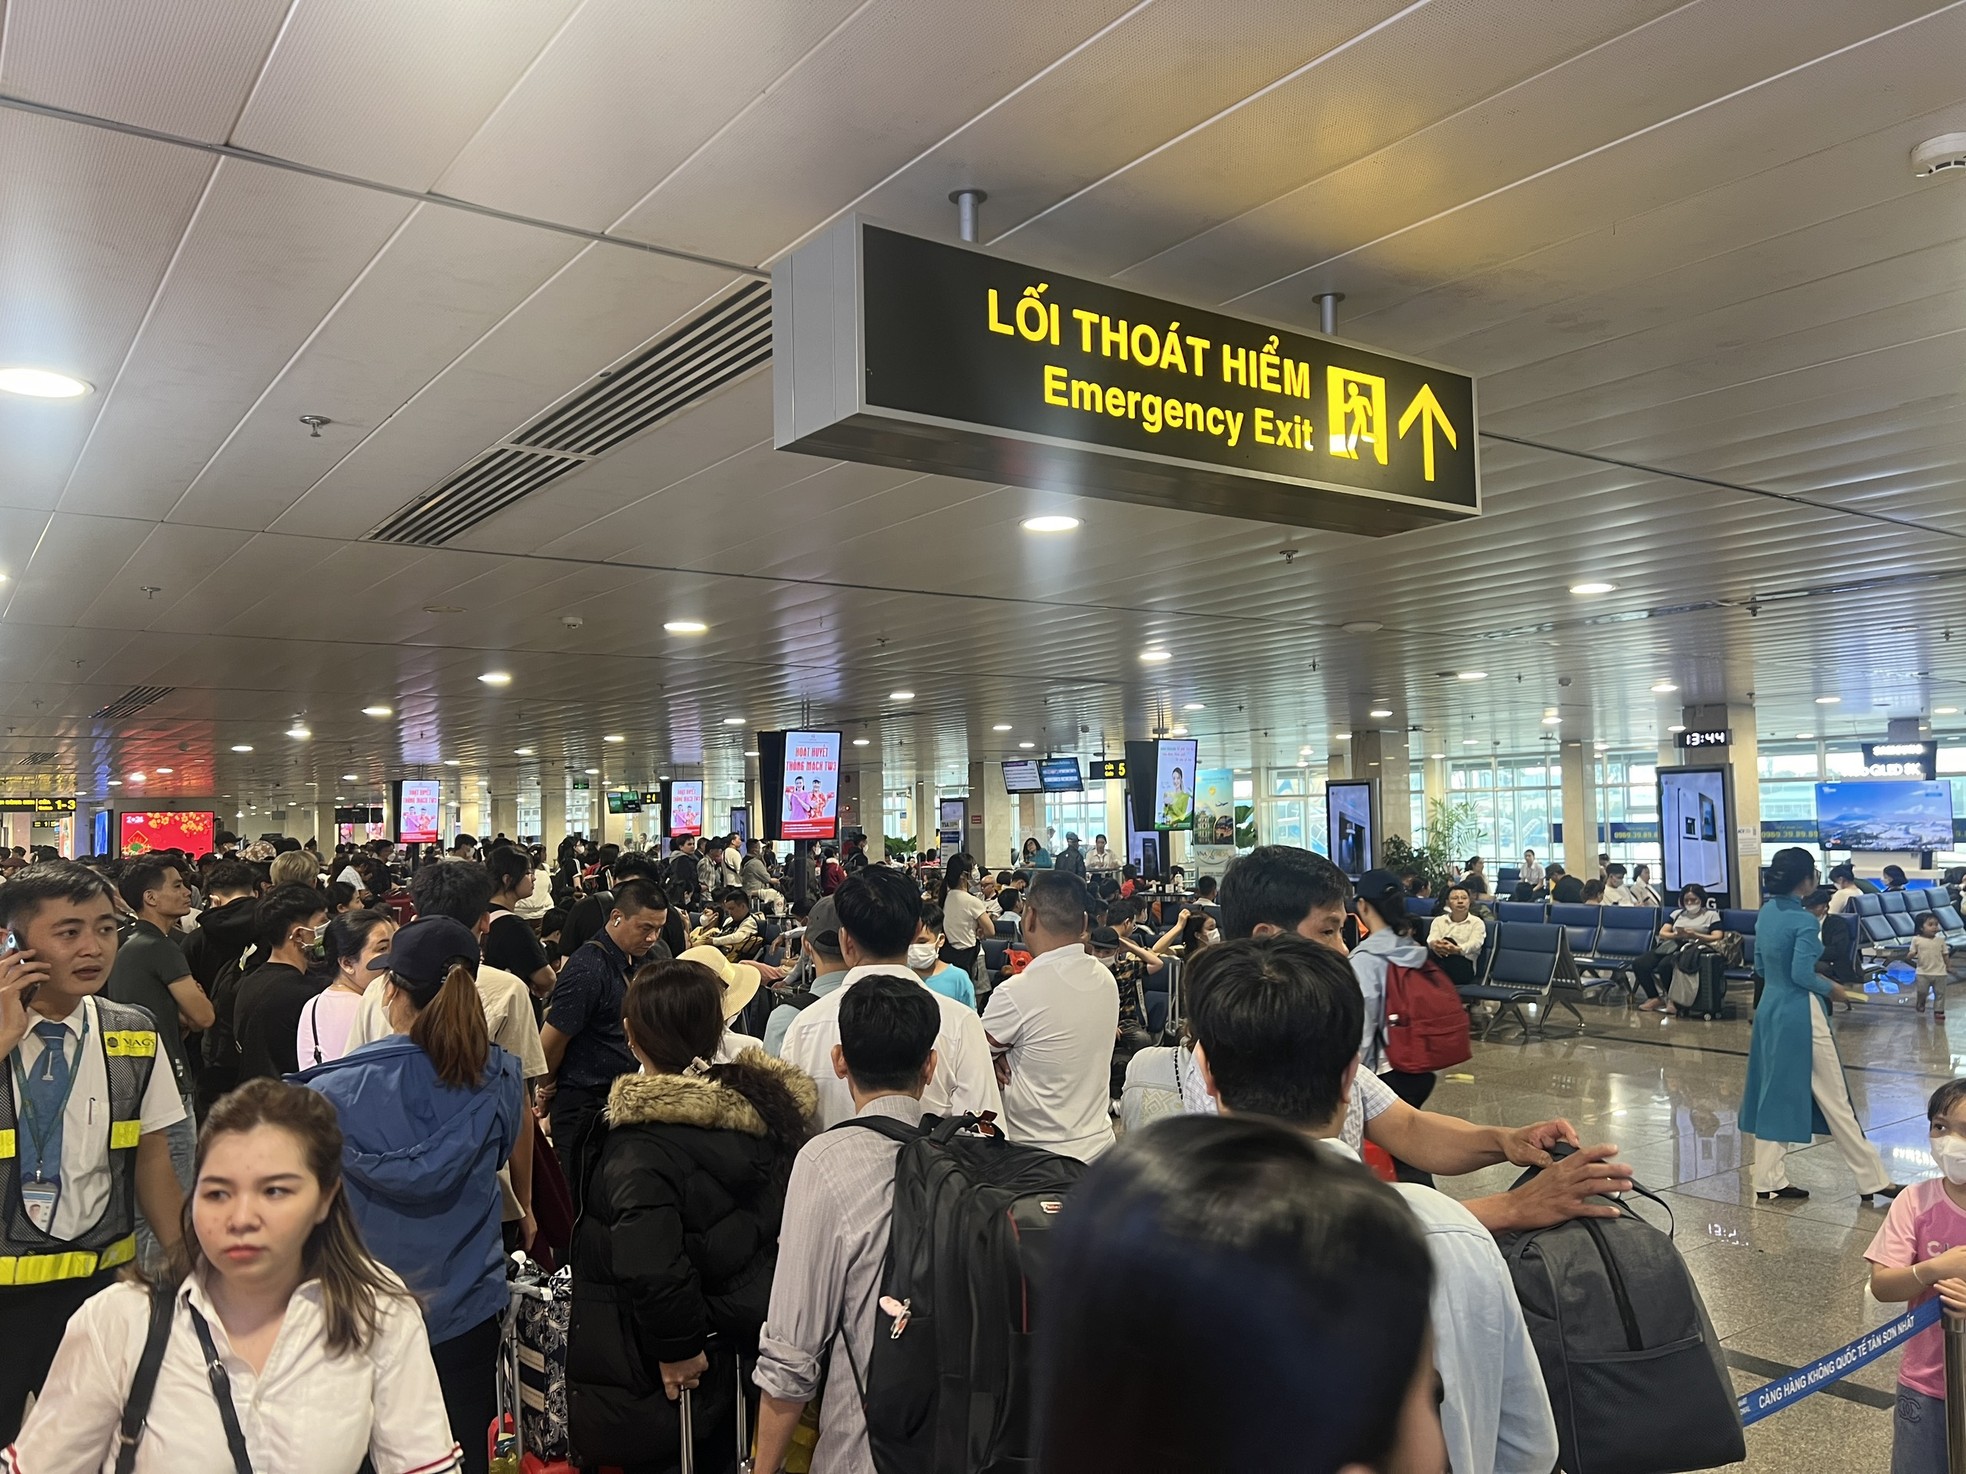 Bất ngờ hình ảnh Sân bay Tân Sơn Nhất, cửa ngõ về miền Tây ngày 26 Tết - Ảnh 4.